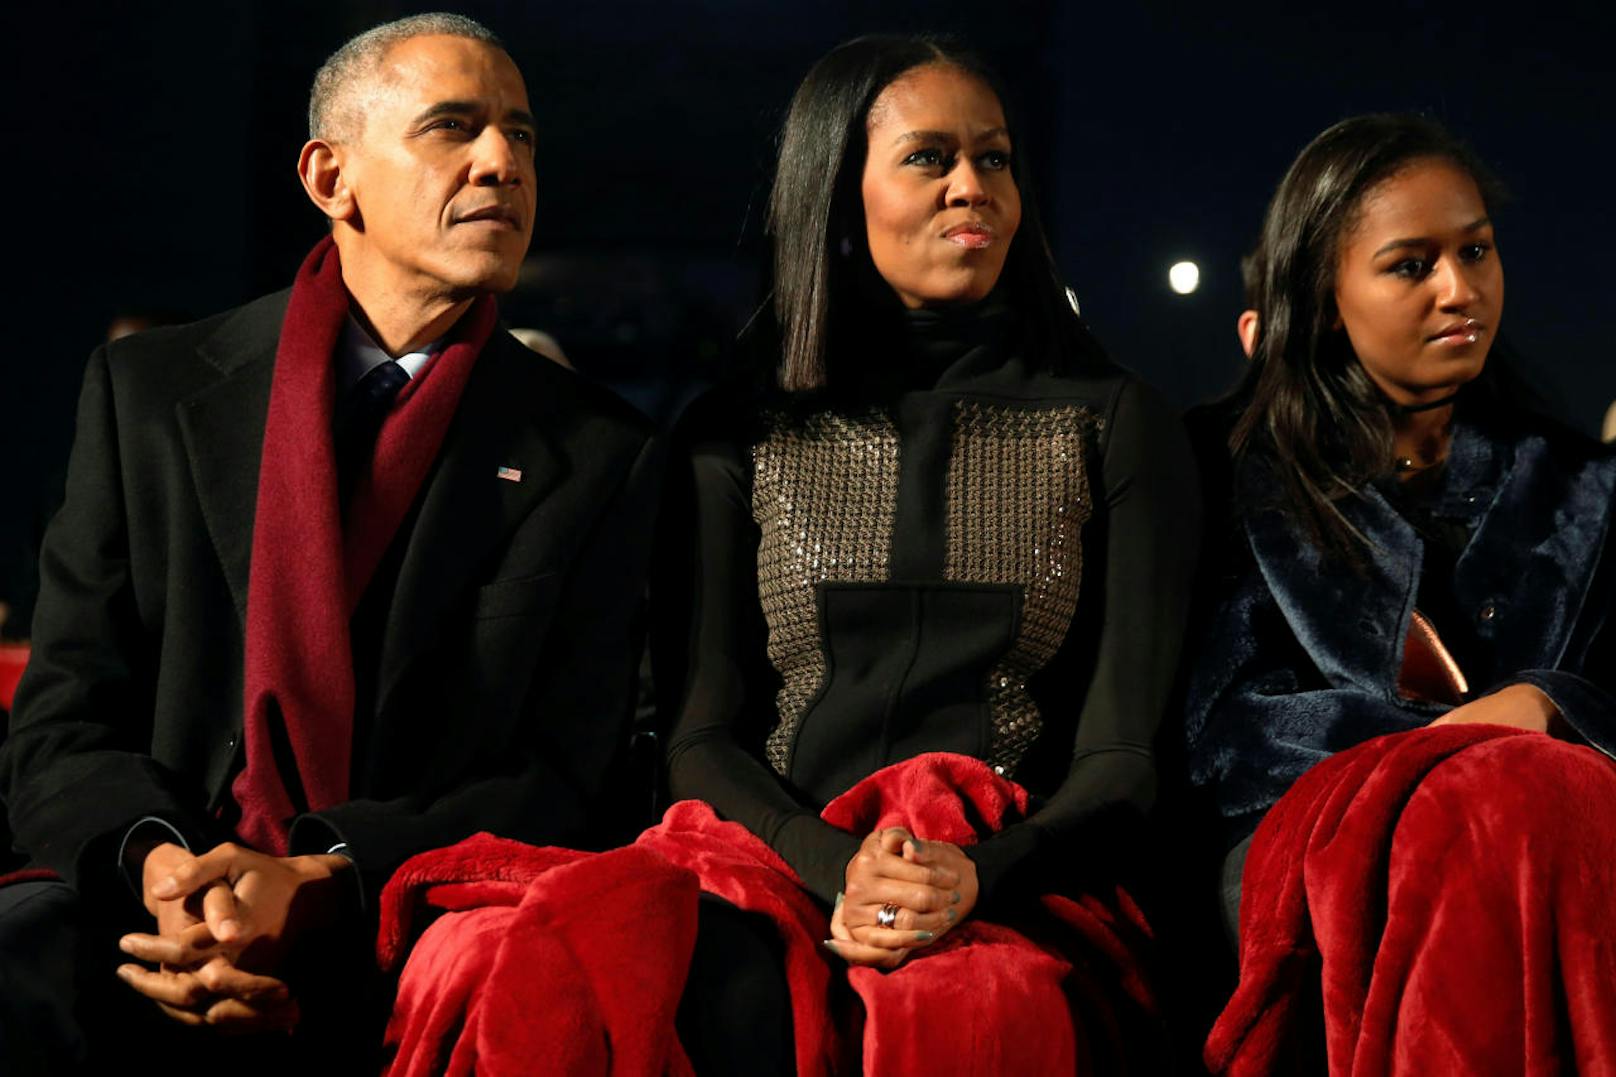 Papa Barack, Mama Michelle und Tochter Sasha zu Weihnachten 2016